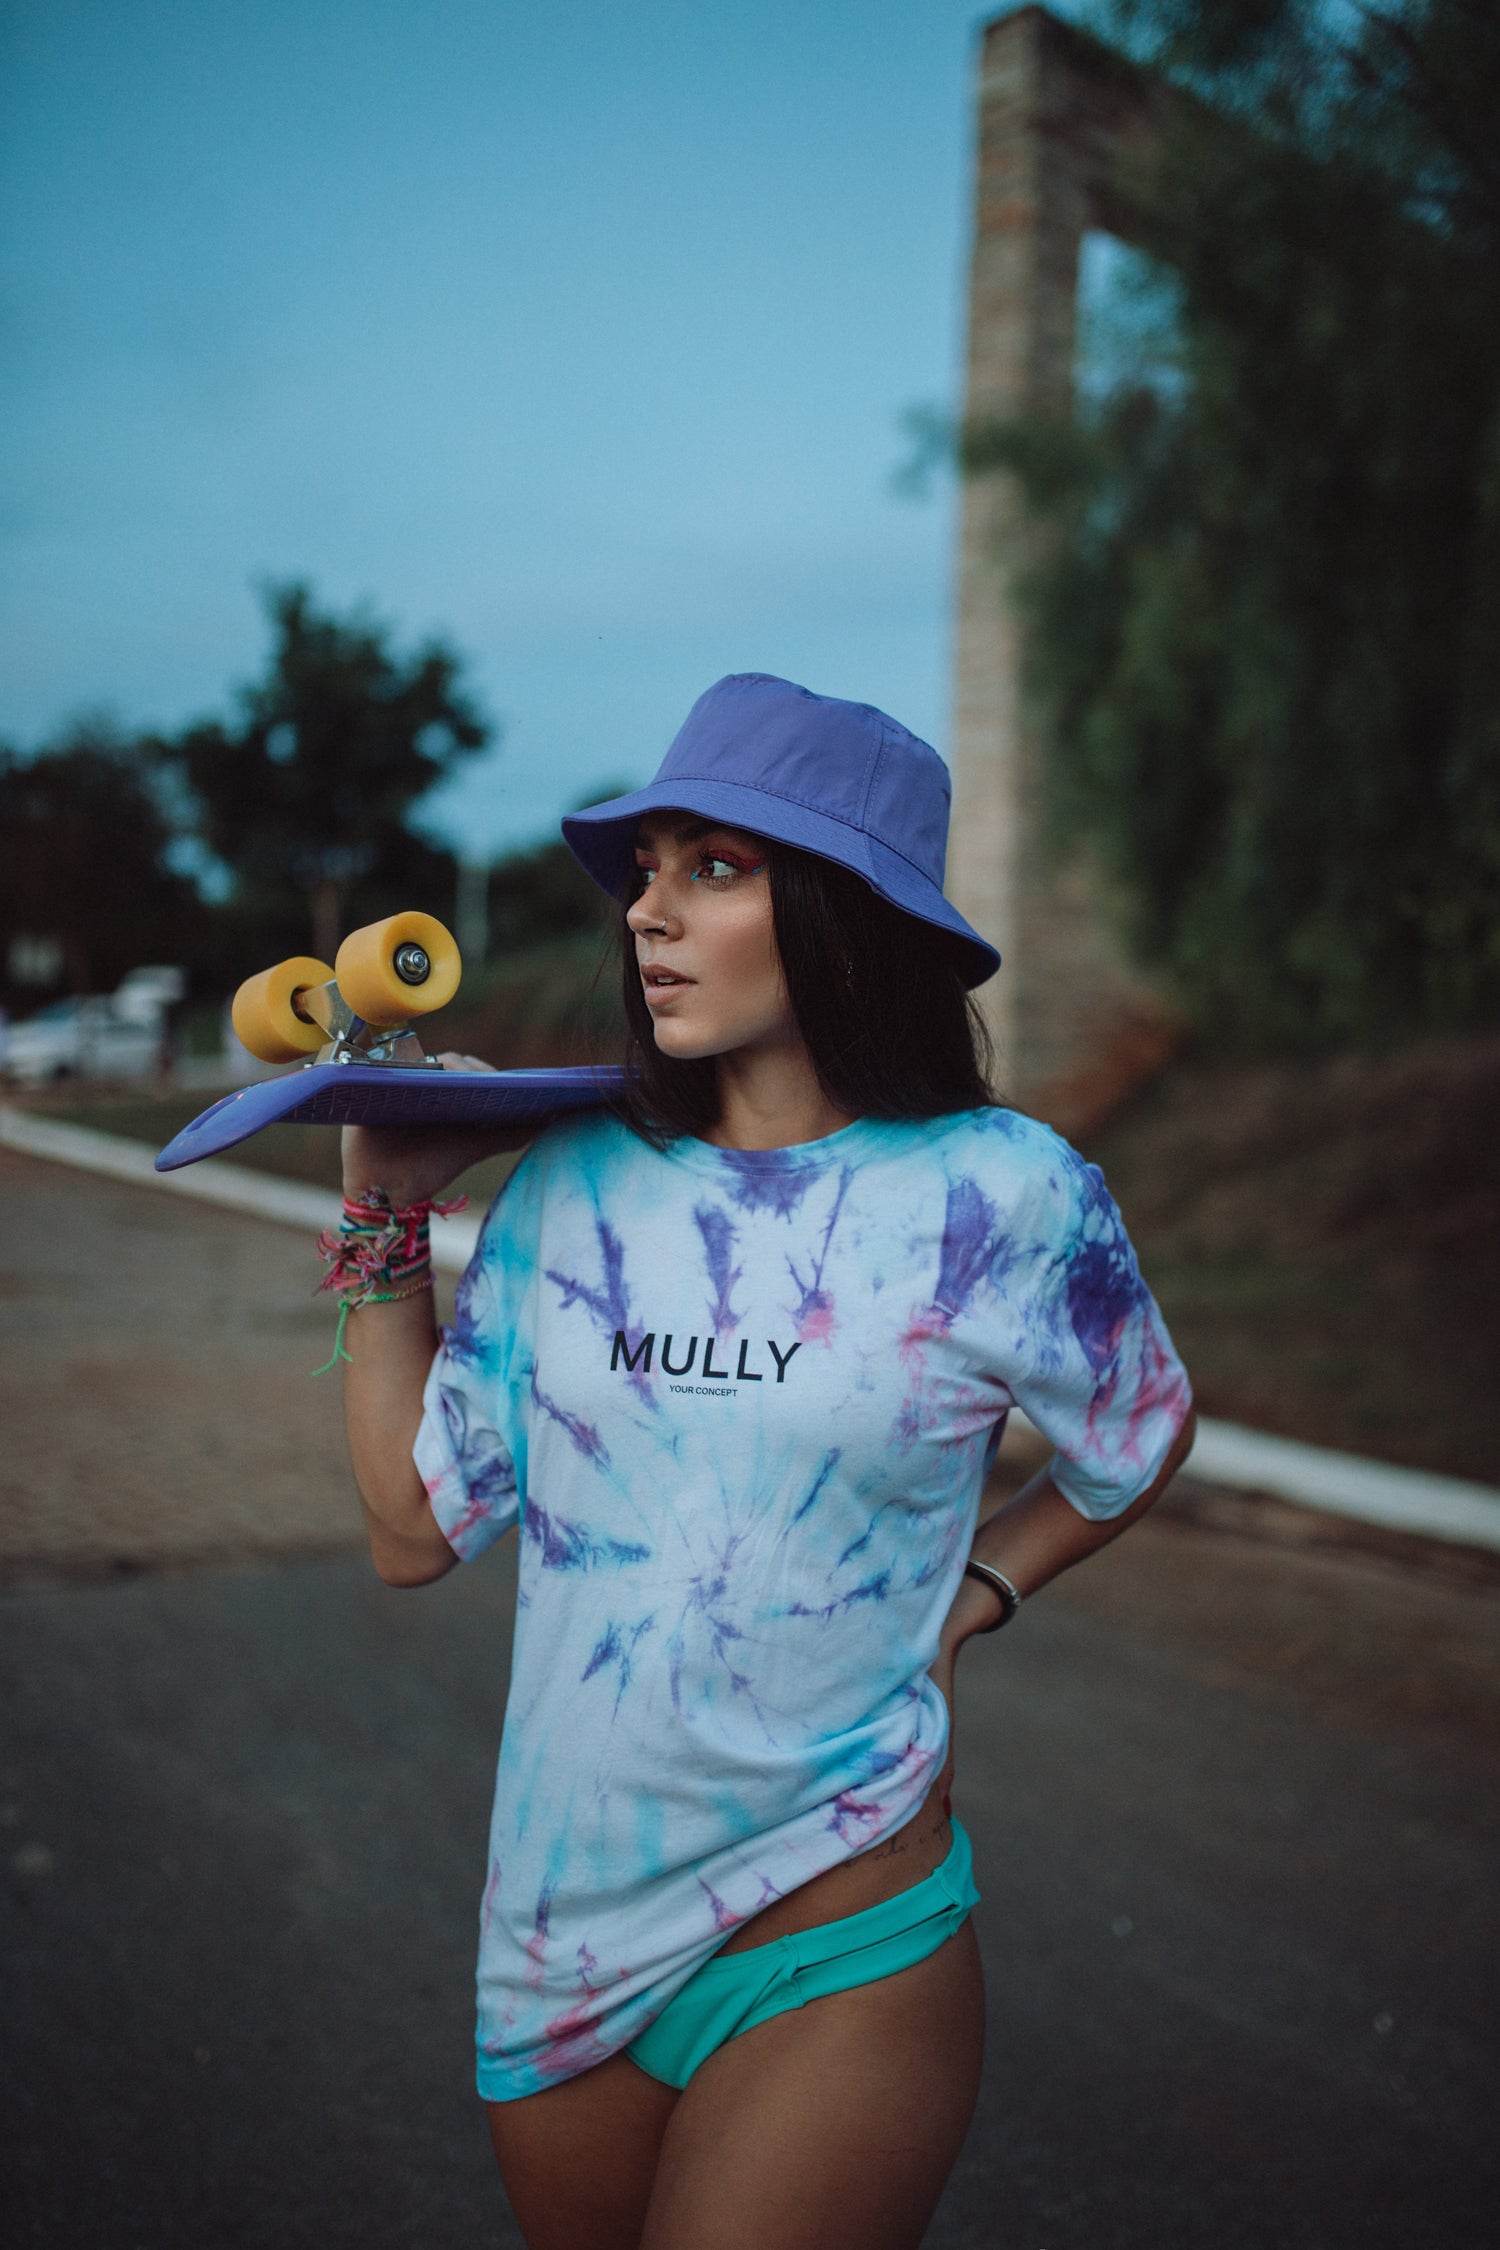 Woman wearing purple bucket hat holding a skateboard